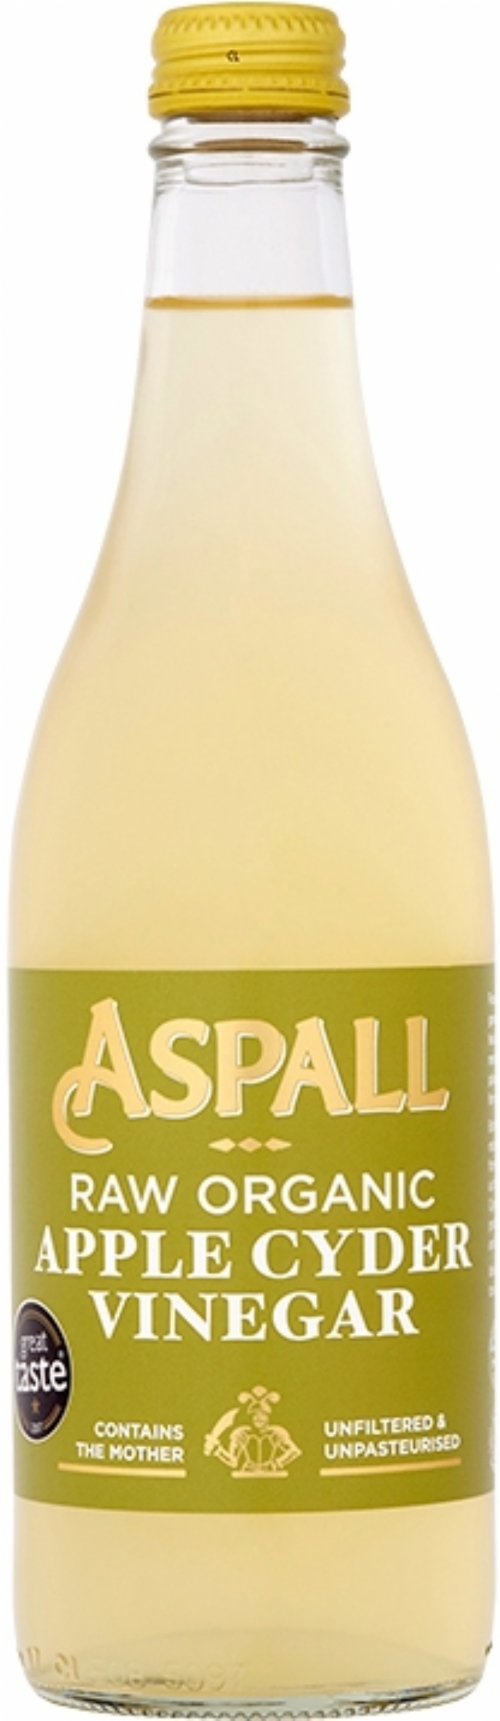 ASPALL Raw Organic Apple Cyder Vinegar 500ml